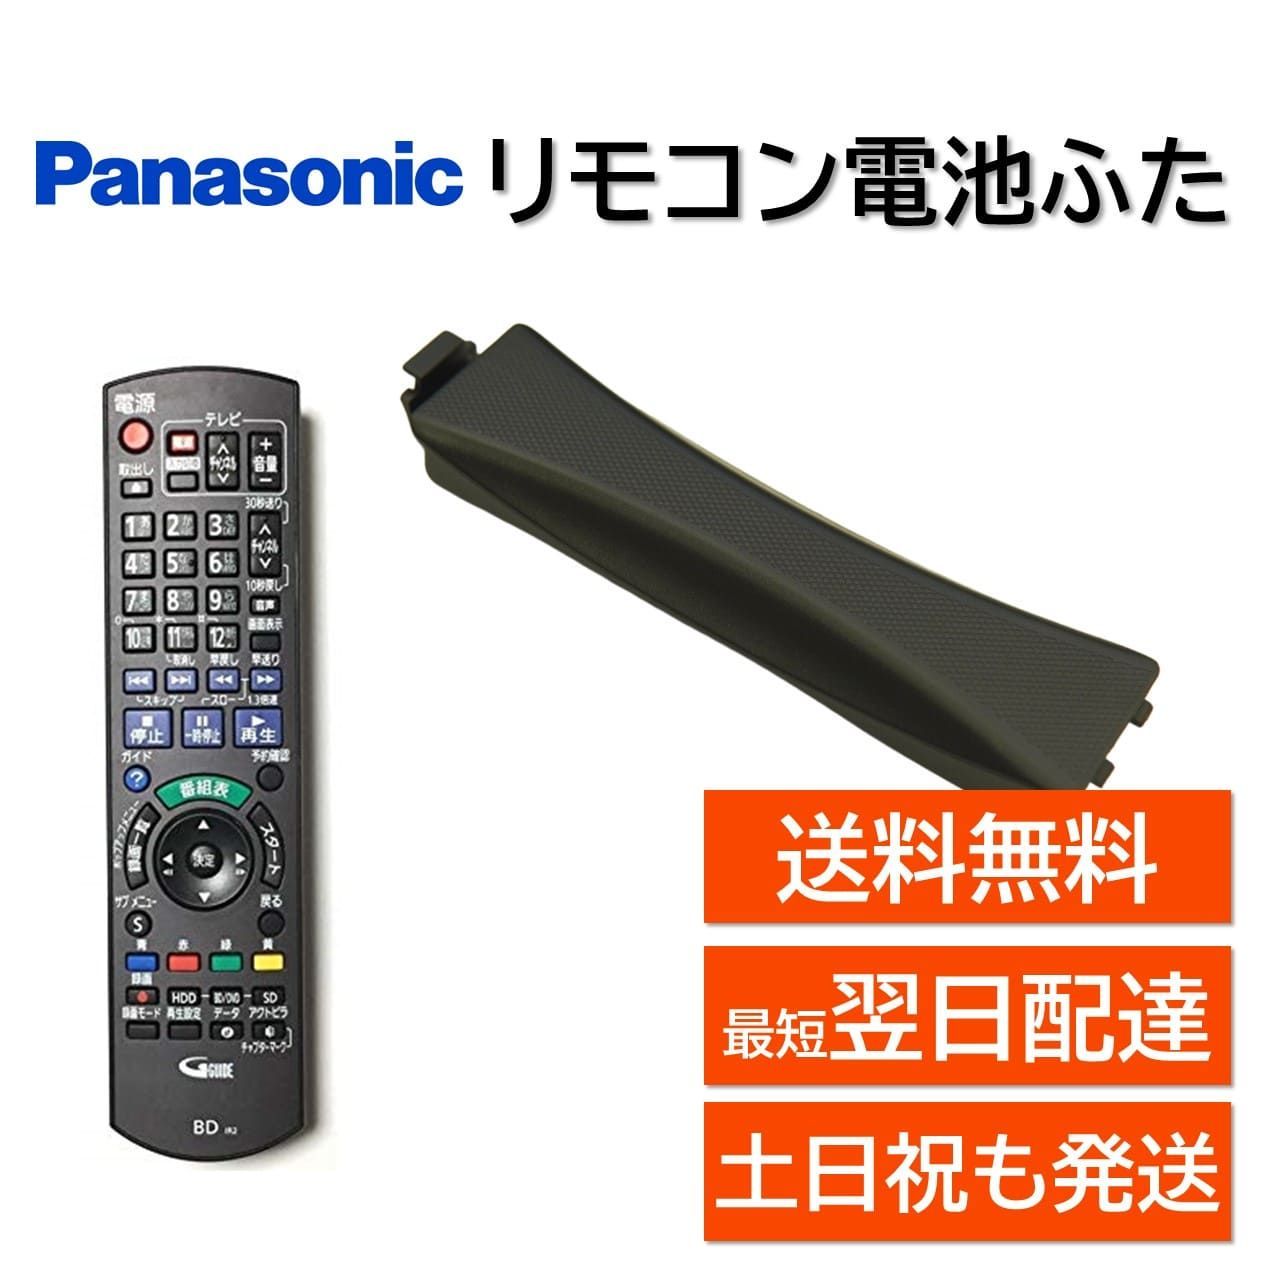 パナソニック Panasonic ブルーレイレコーダー用リモコン N2QAYB001182☆ 【代引き不可】 - アクセサリー・部品